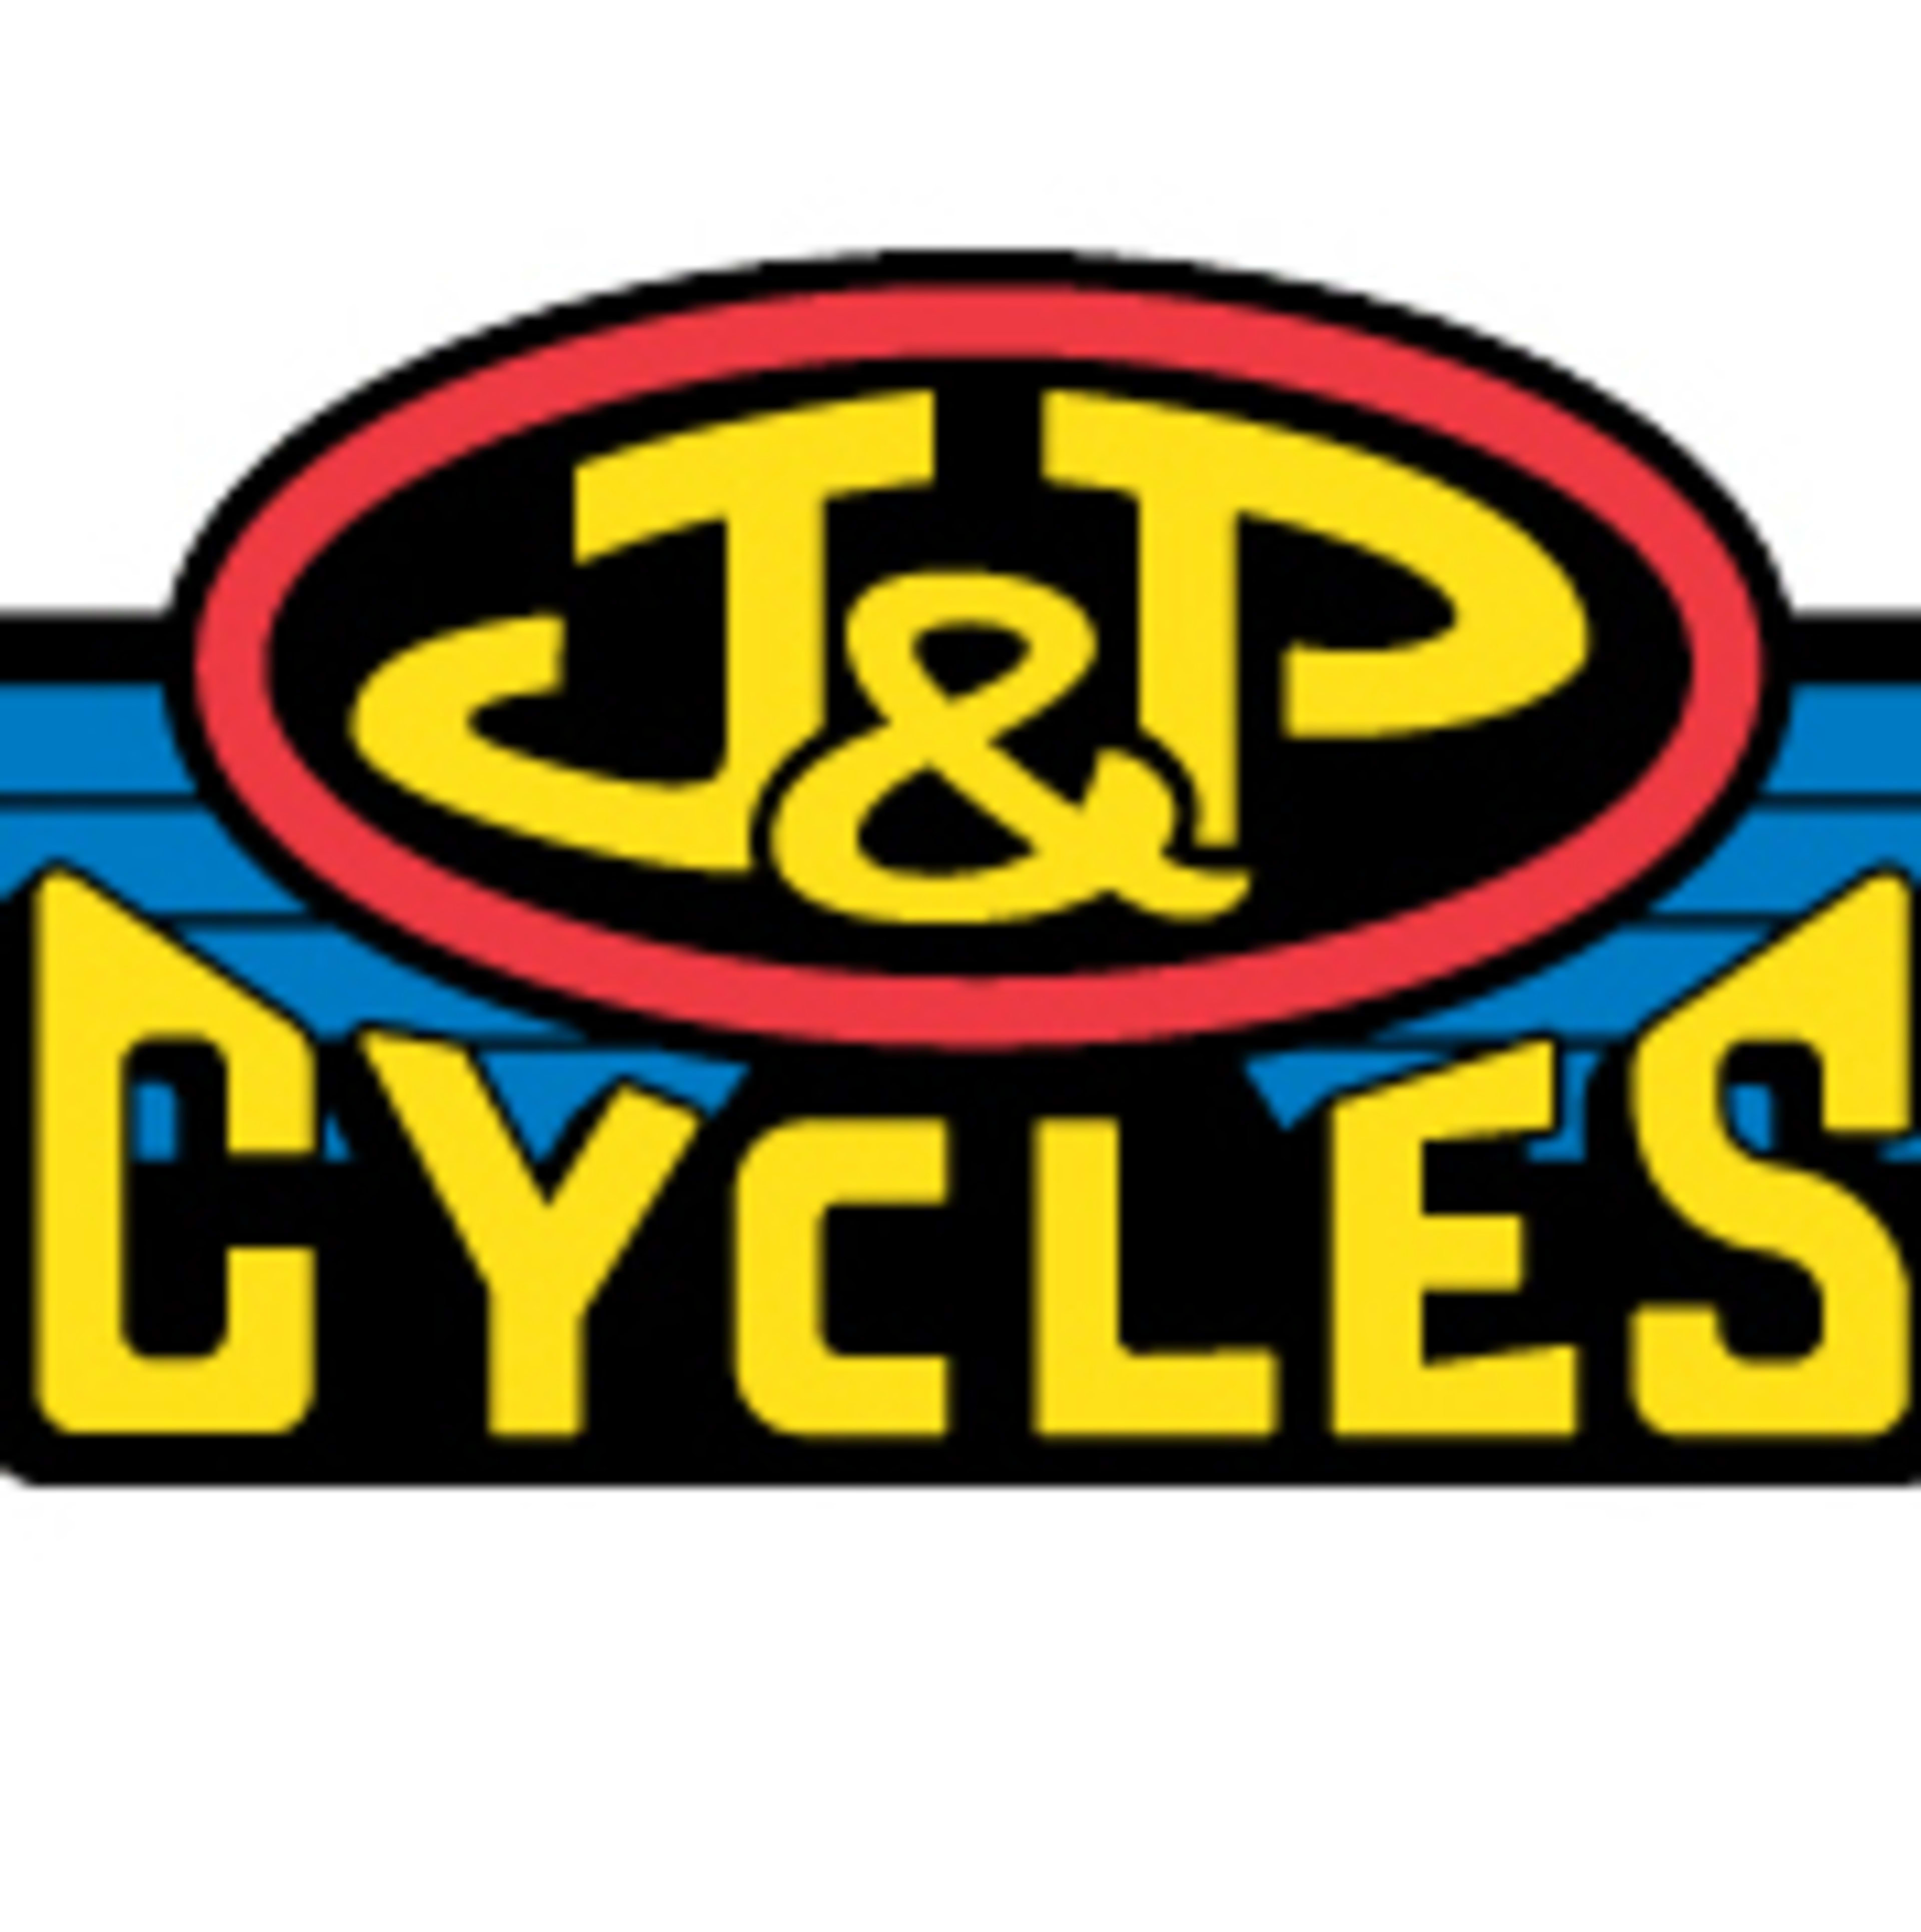 J&P CyclesCode